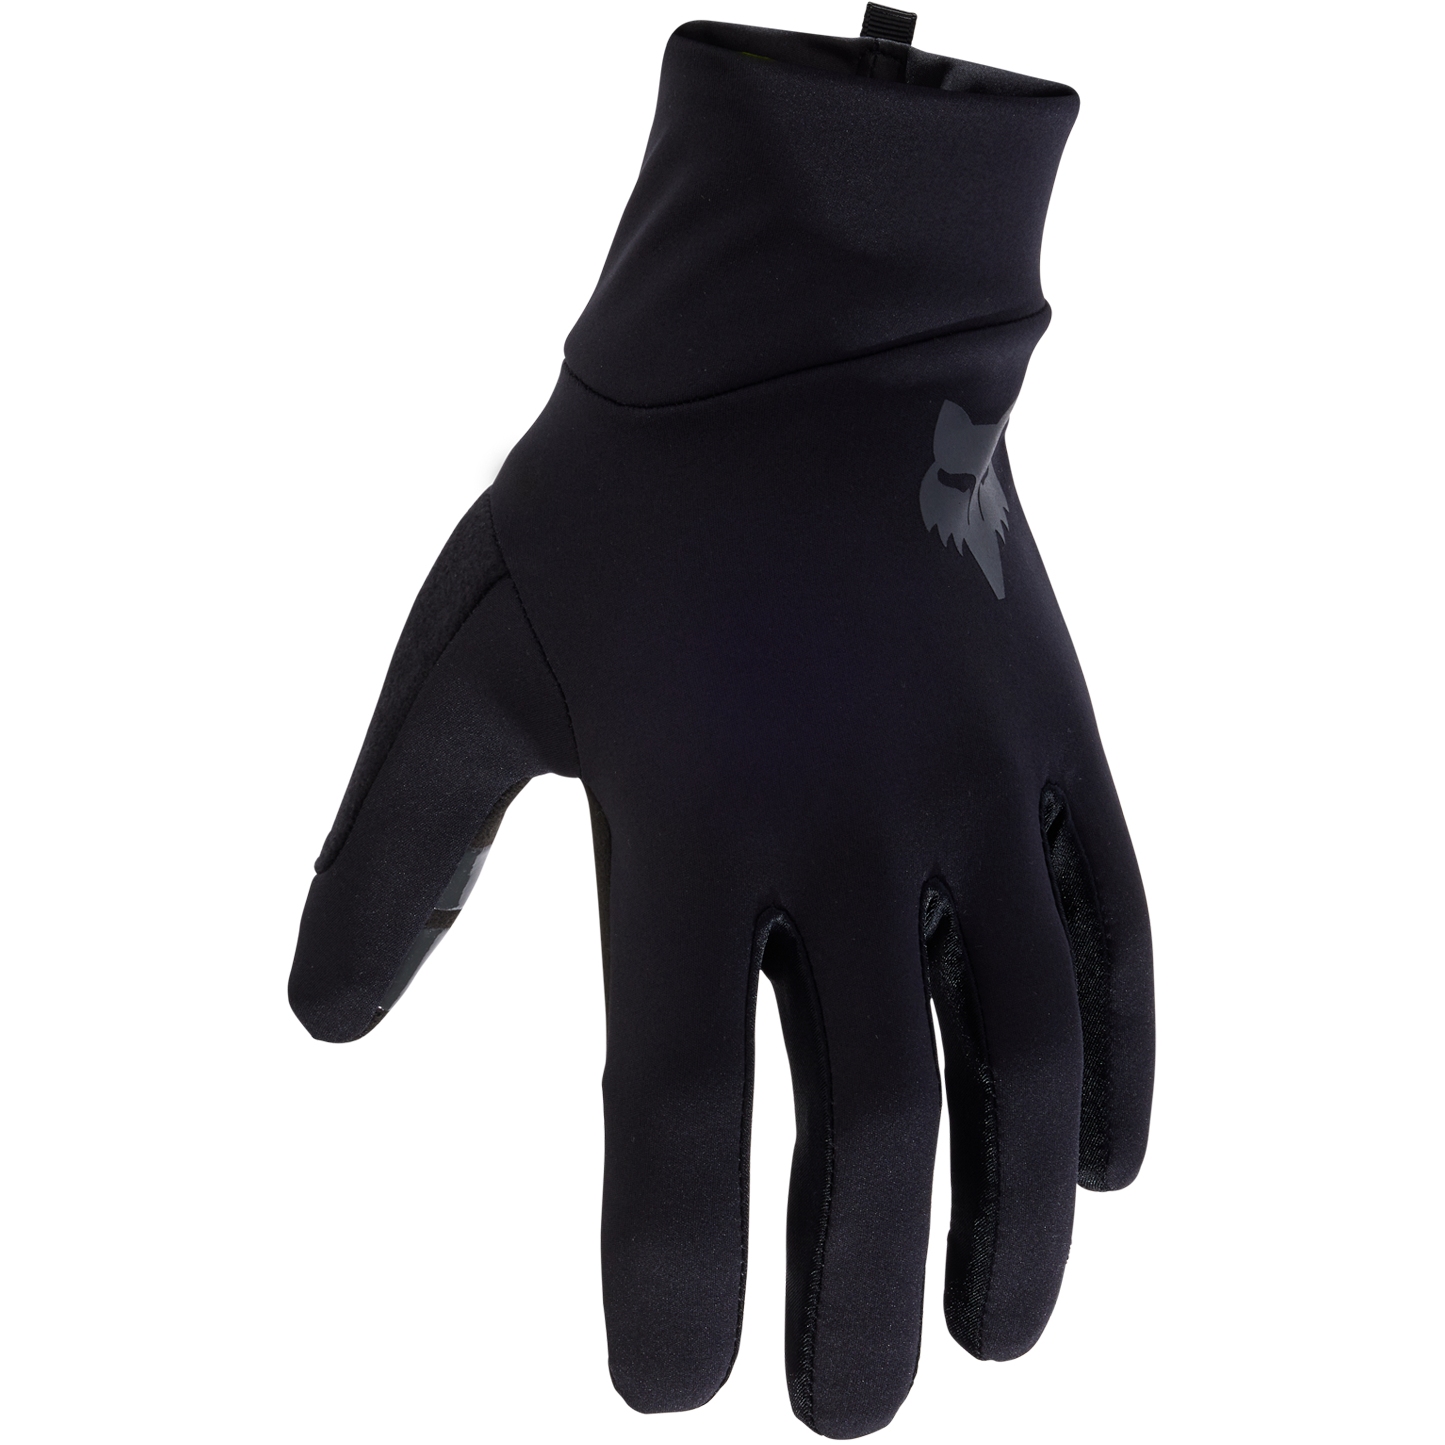 Productfoto van FOX Ranger Fire MTB Handschoenen Heren - zwart